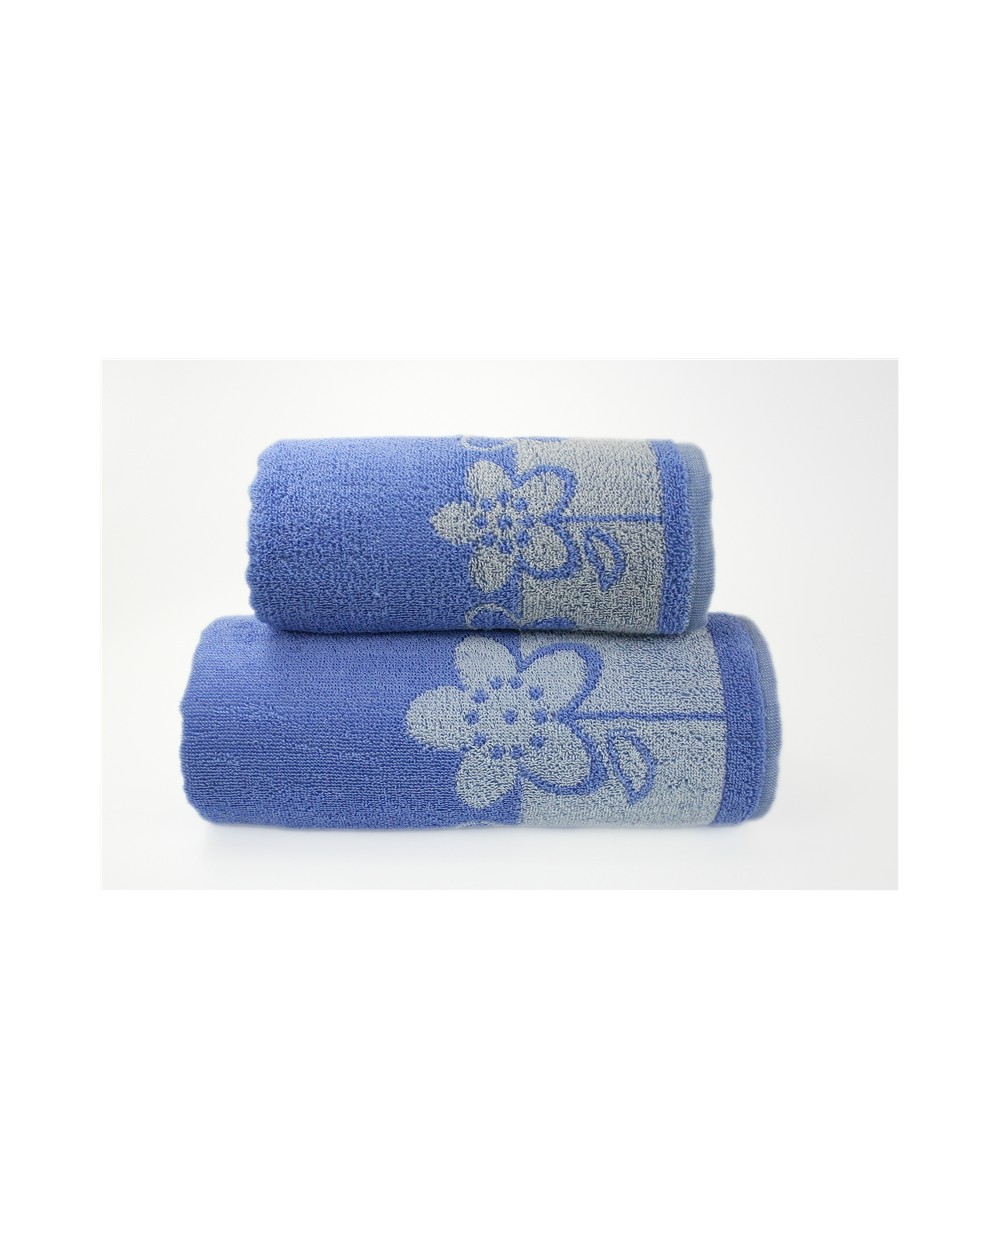 Ręcznik Paloma 2 bawełna 70x140 niebieski